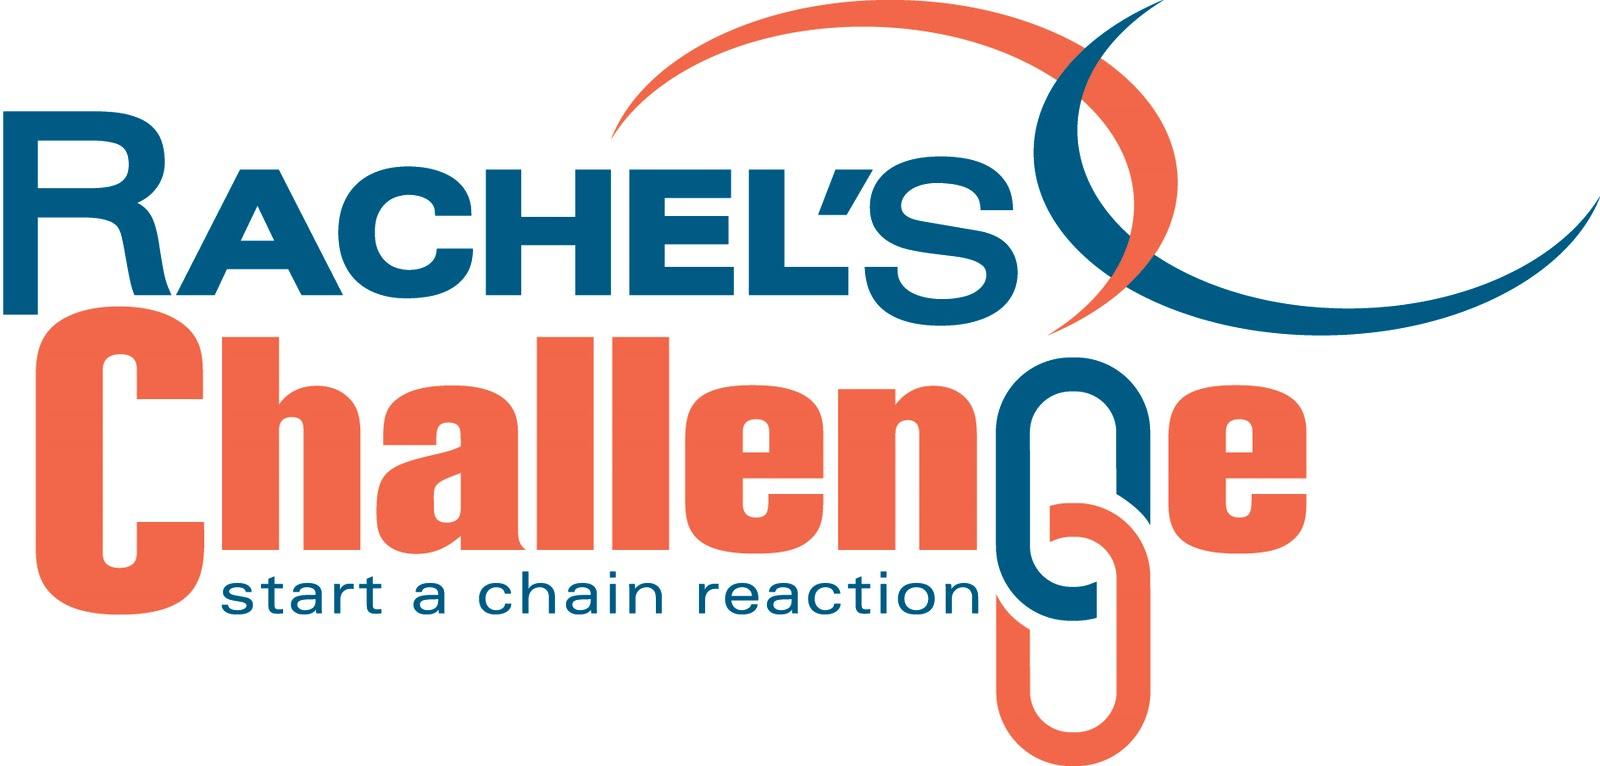 Rachel’s Challenge coming to LHS